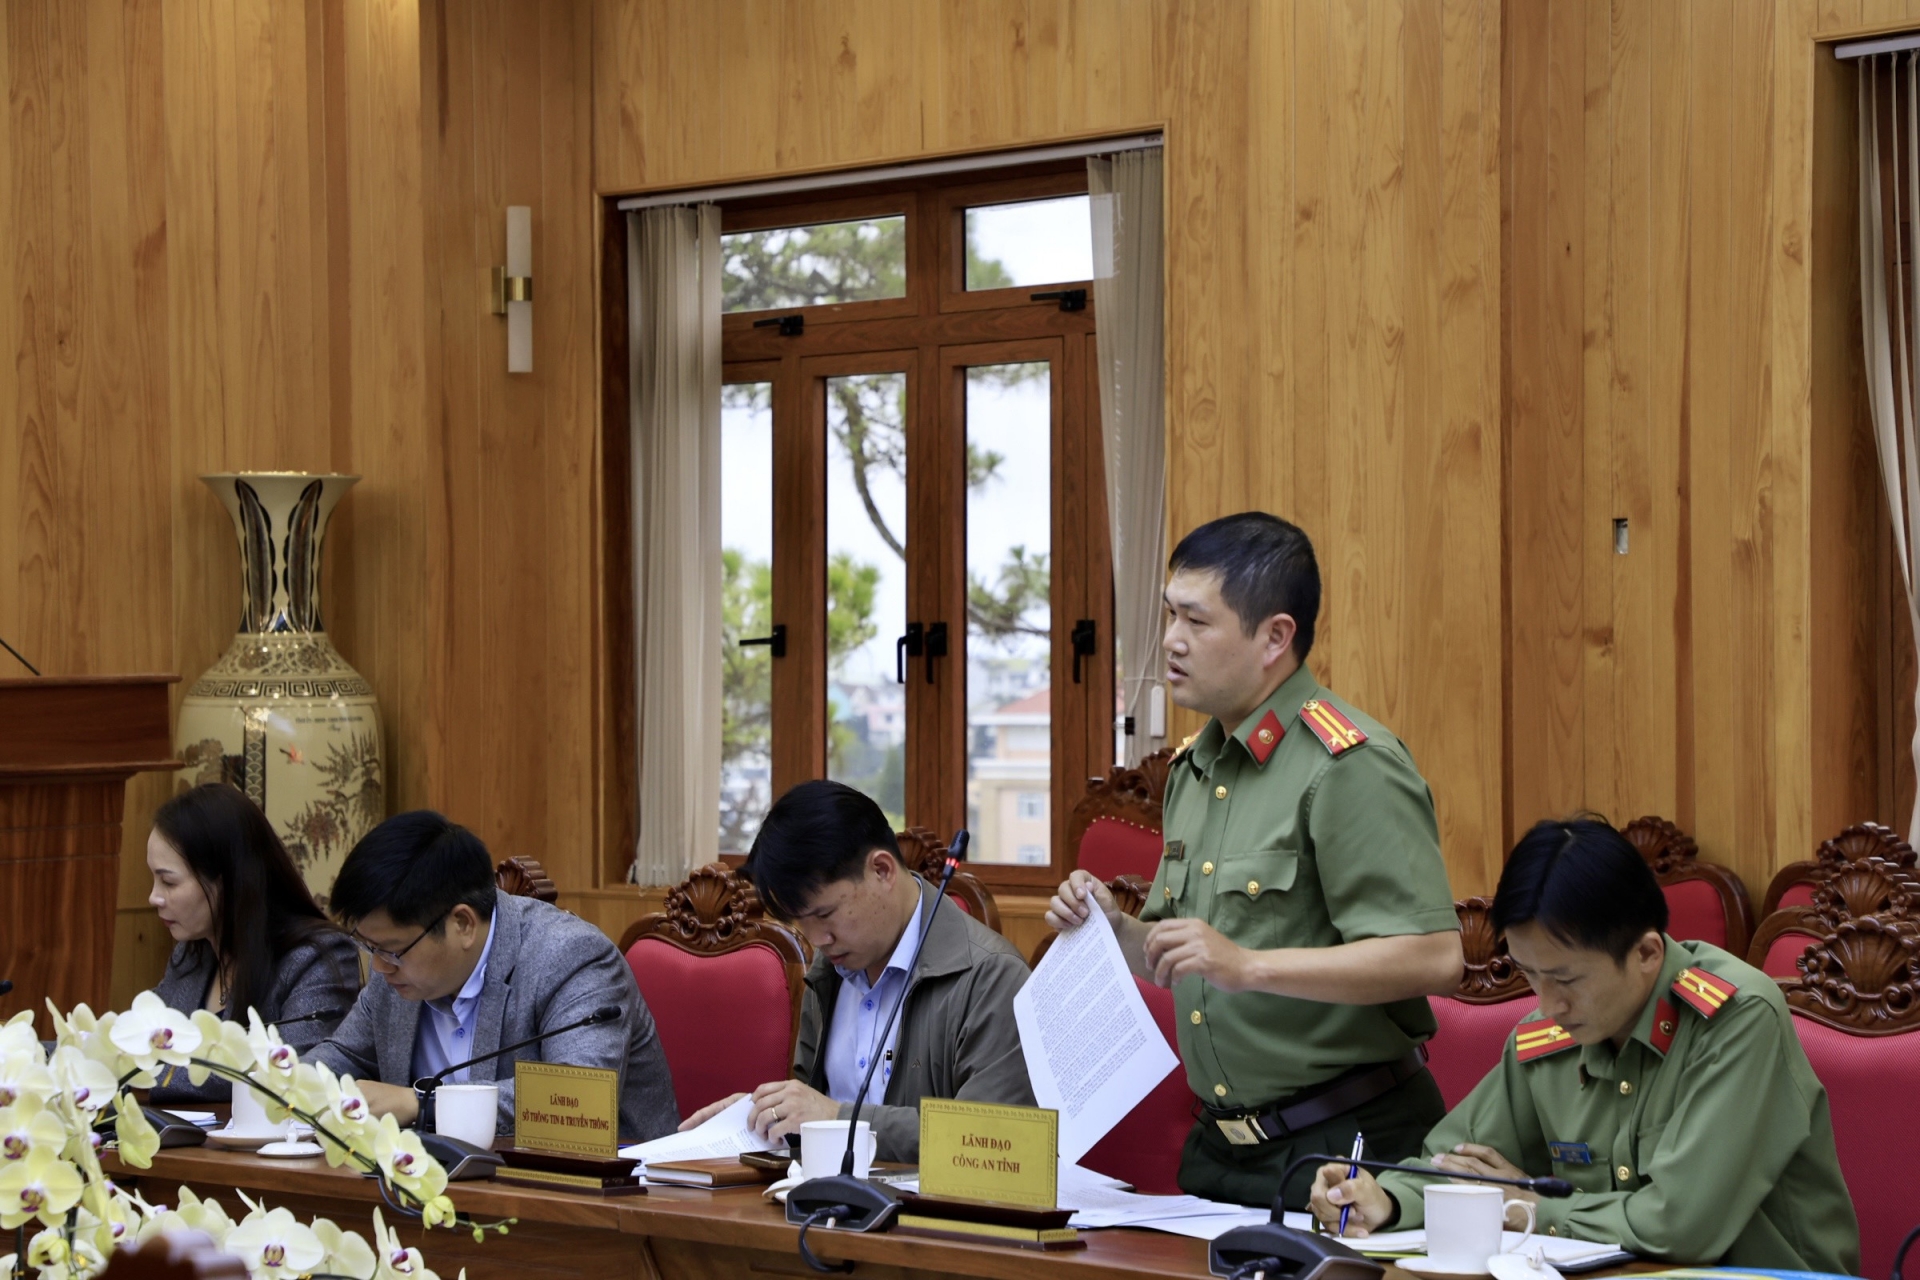 Trung tá Lê Thanh Hải – Phó Trưởng Phòng PA03, báo cáo về công tác chuẩn bị bảo đảm an ninh an toàn trong Tuần lễ vàng Du lịch